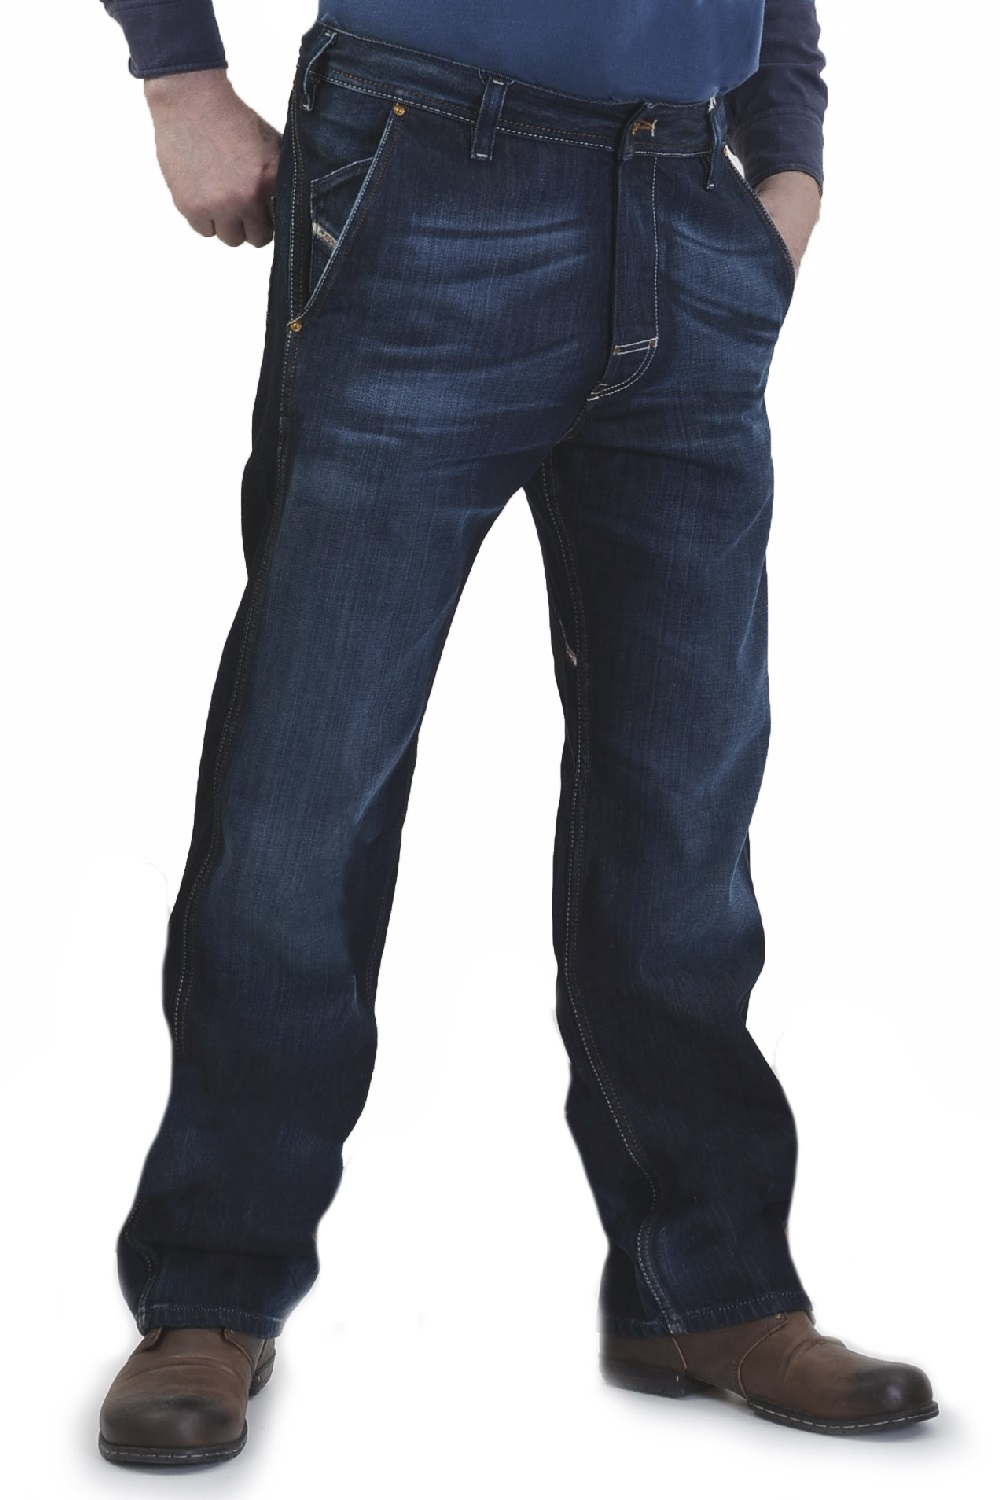 джинсы дизель мужские отзывы